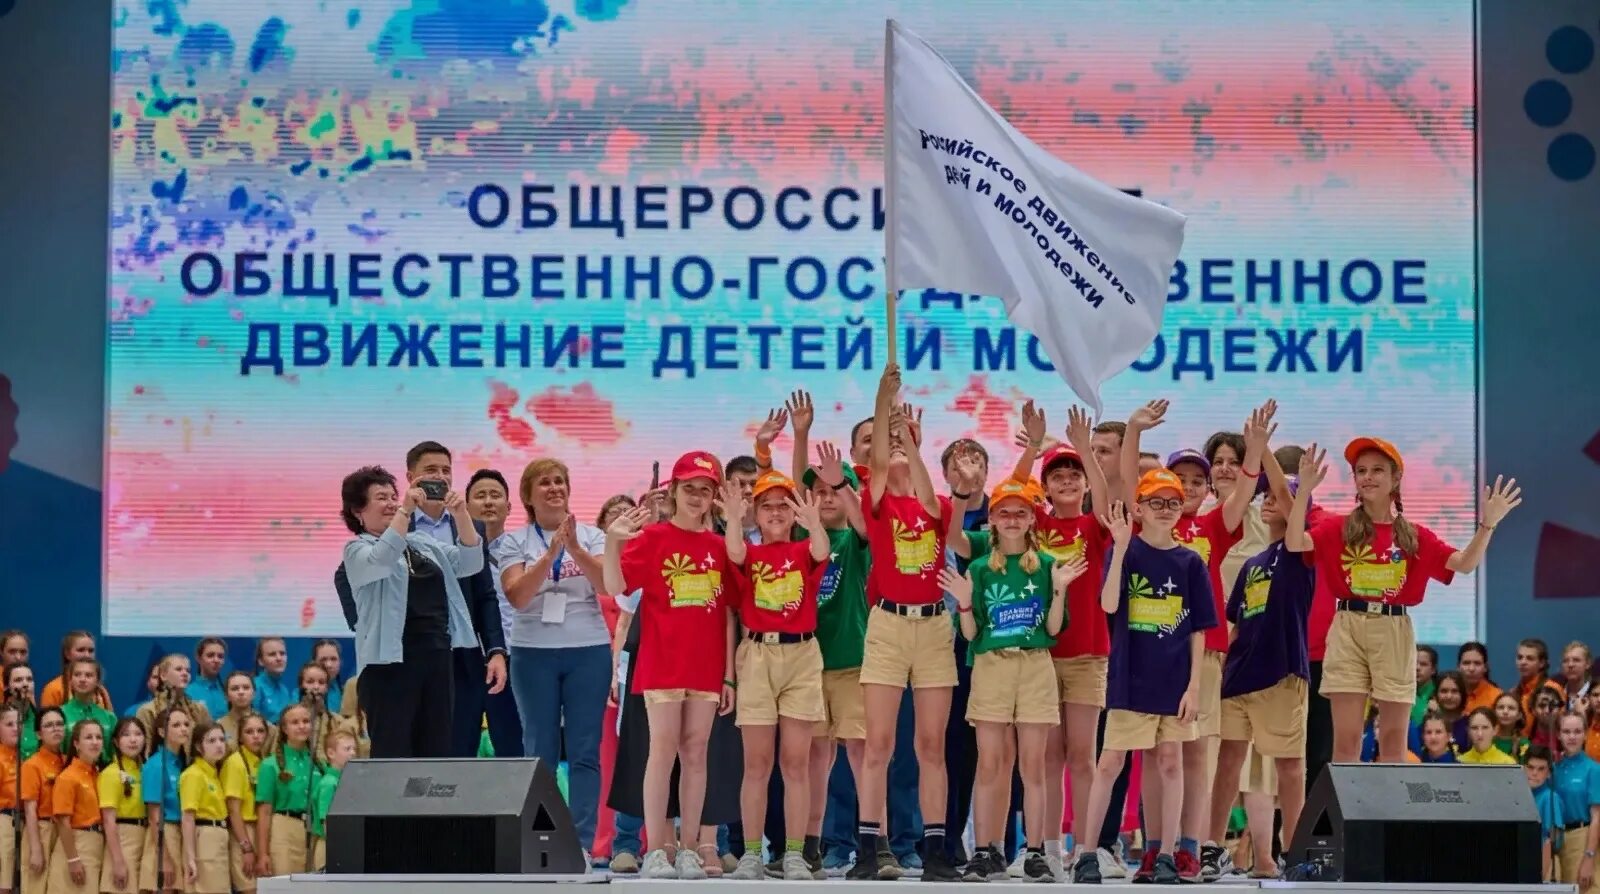 Всероссийское движение детей и молодежи. Росийское движение детей и молодёжи. Российское движение детей и молодежи большая перемена. Создание российского движения детей и молодежи.